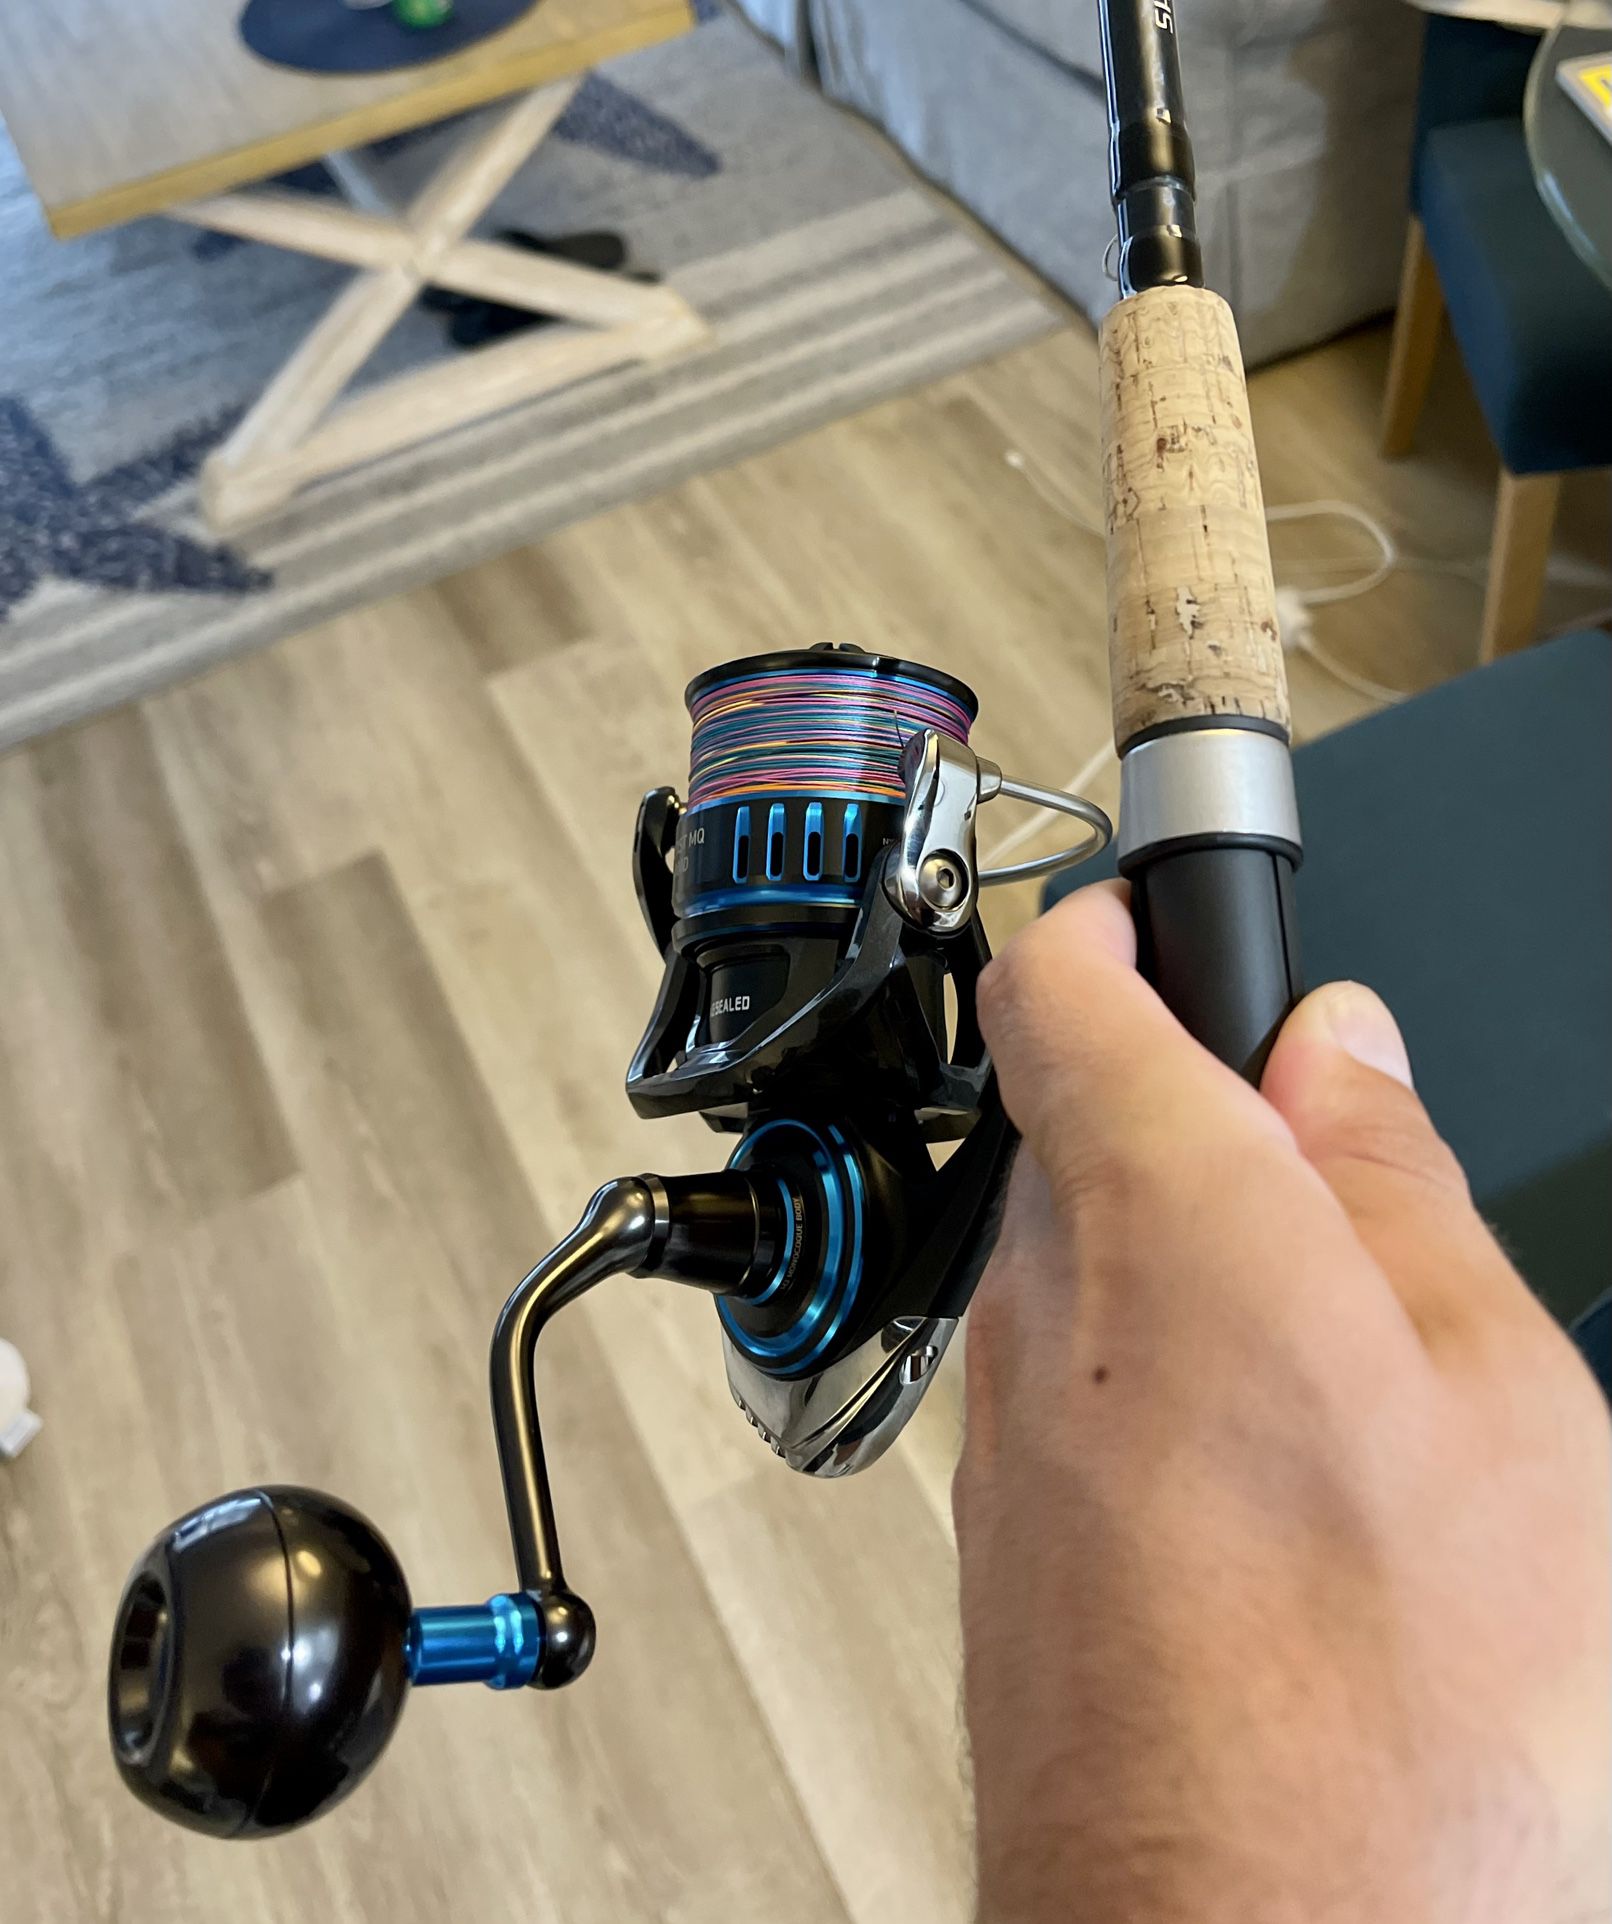 Daiwa Saltist MQ 6000 Spinning Fishing Reel - New Used 2x Shimano